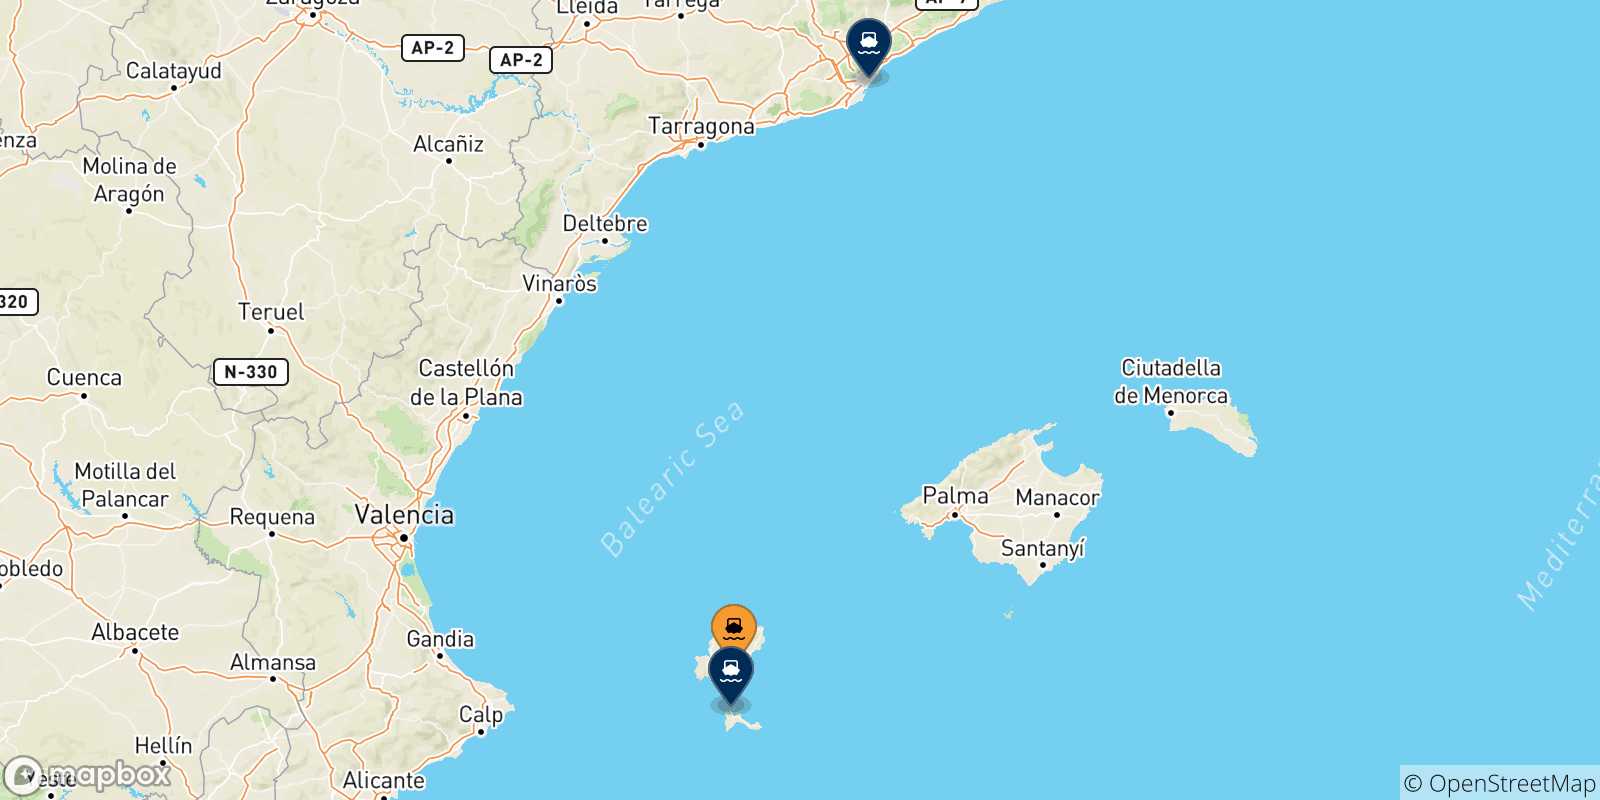 Mappa delle possibili rotte tra Ibiza e la Spagna